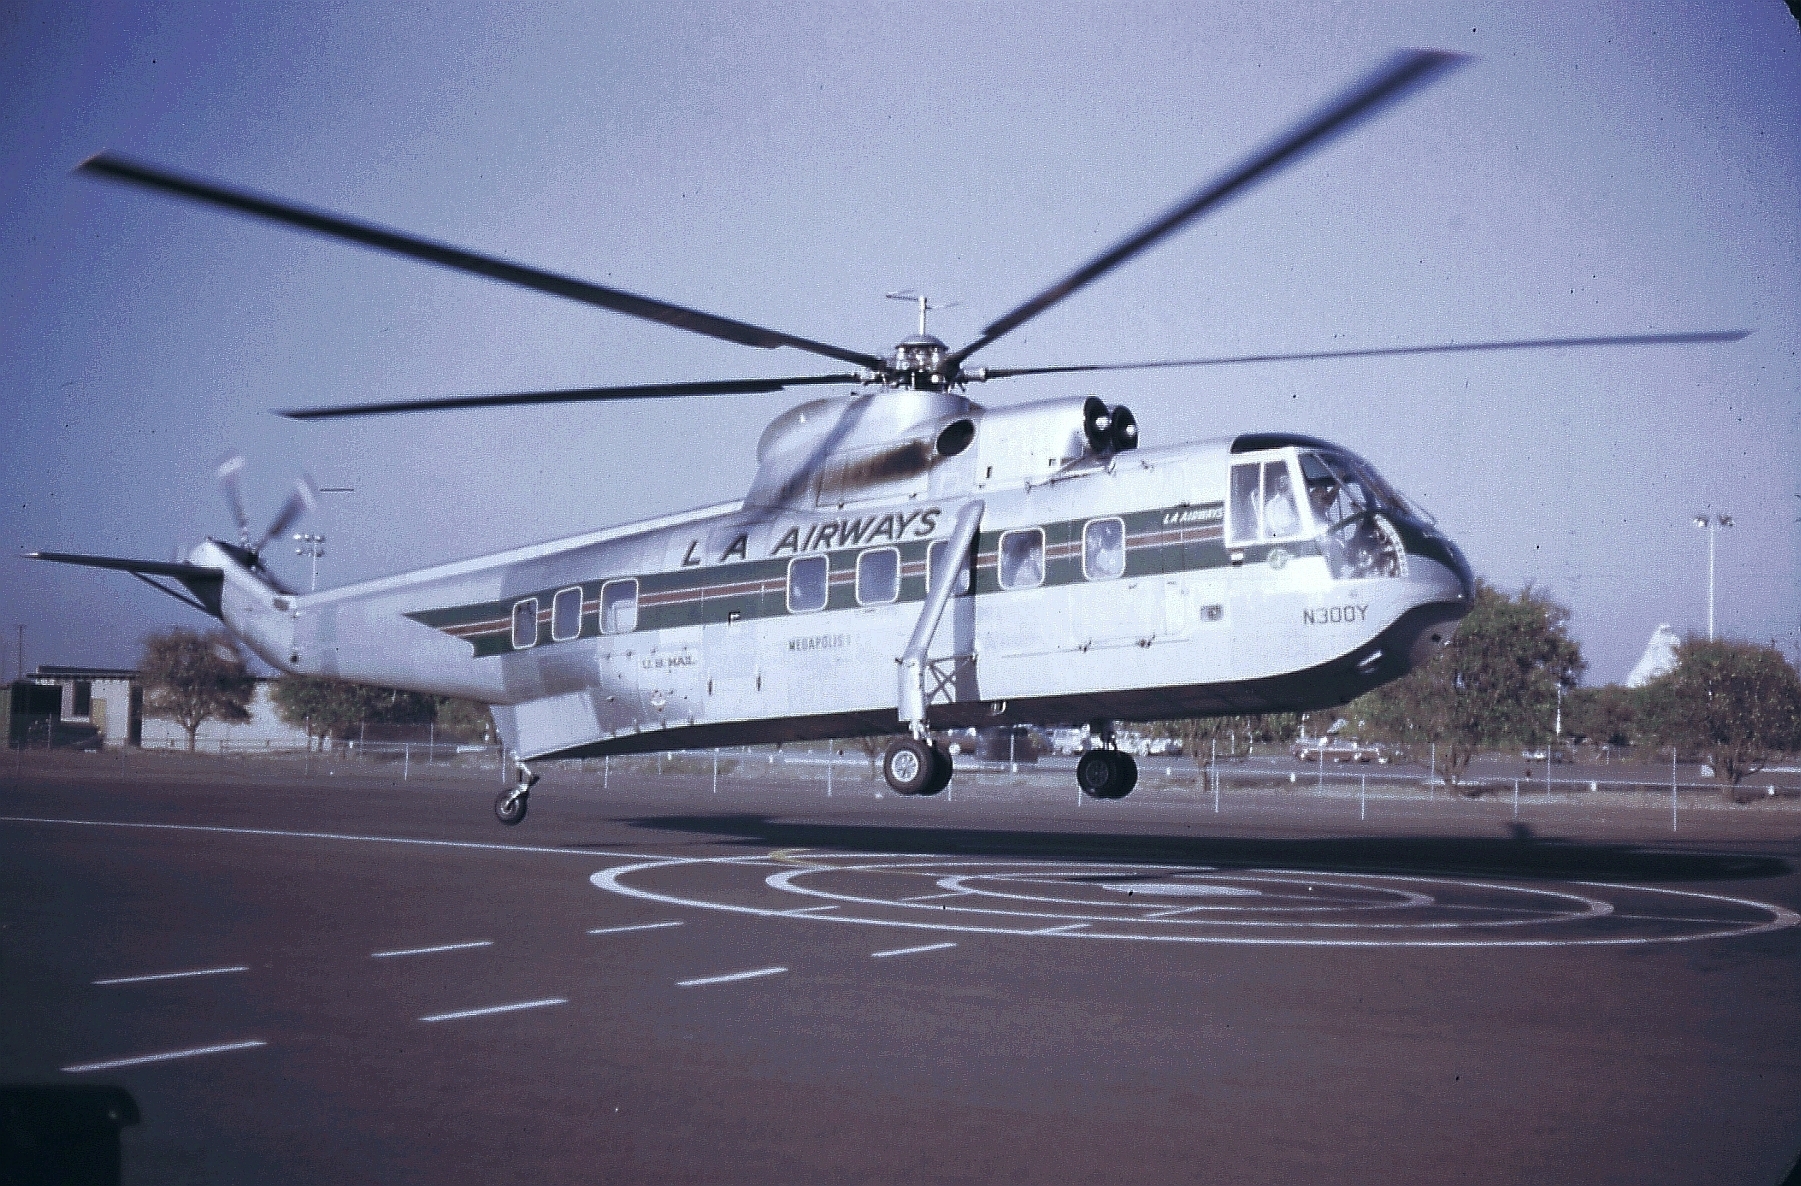 Sikorsky S-61L N300Y, Los Angeles Airways, at Disneyland Heliport, Anaheim, California. (Robert Boser)